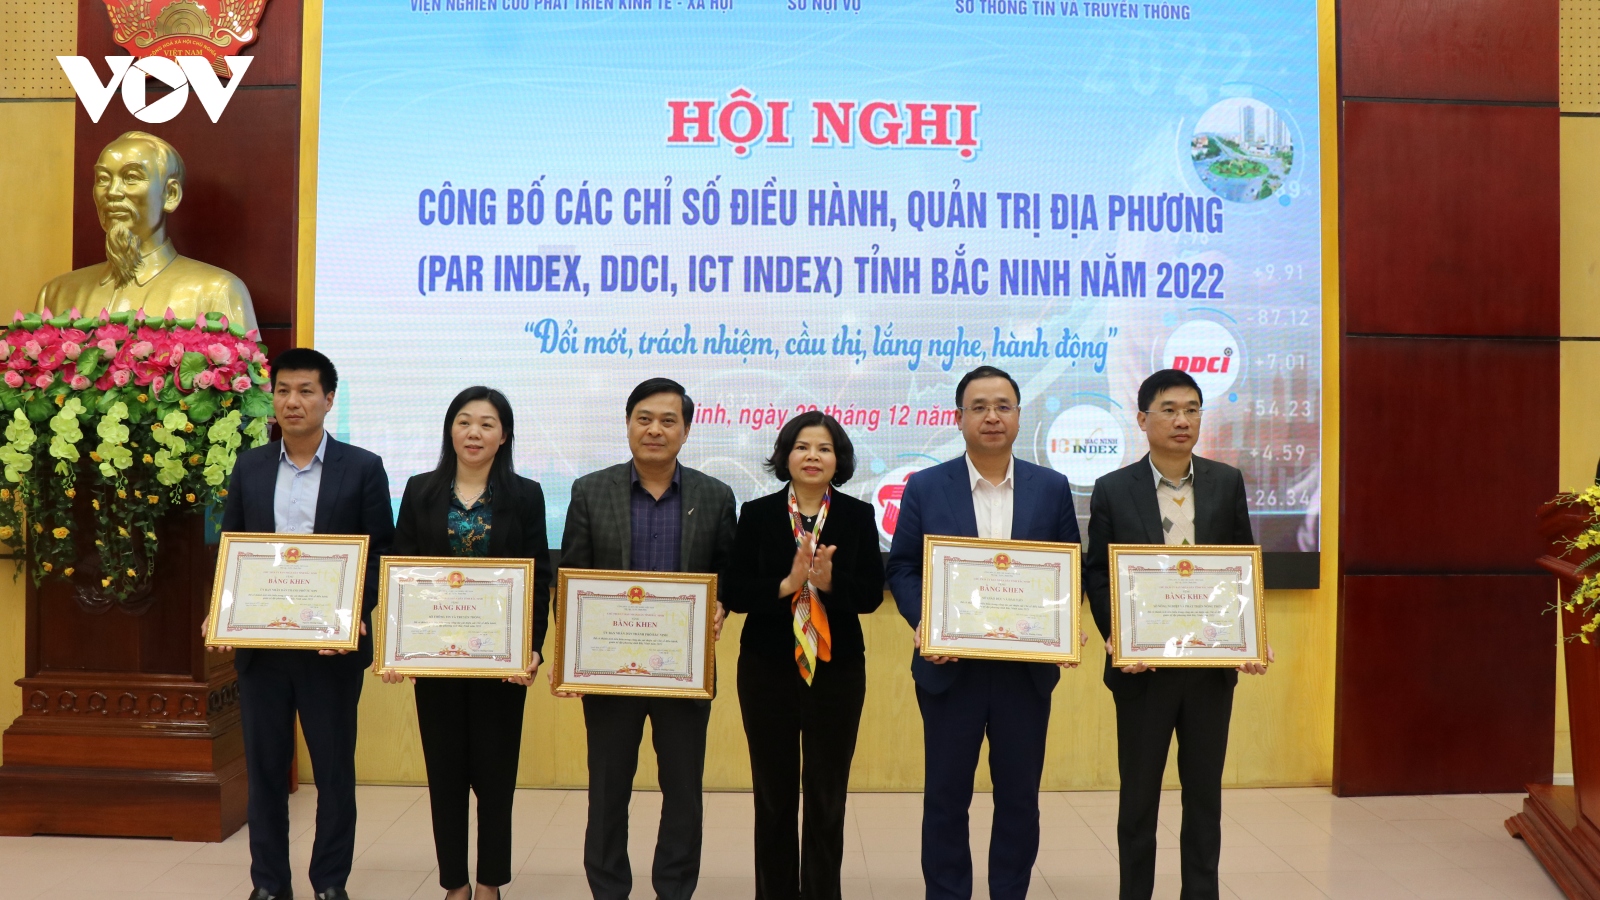 Bắc Ninh công bố Chỉ số điều hành, quản trị địa phương năm 2022